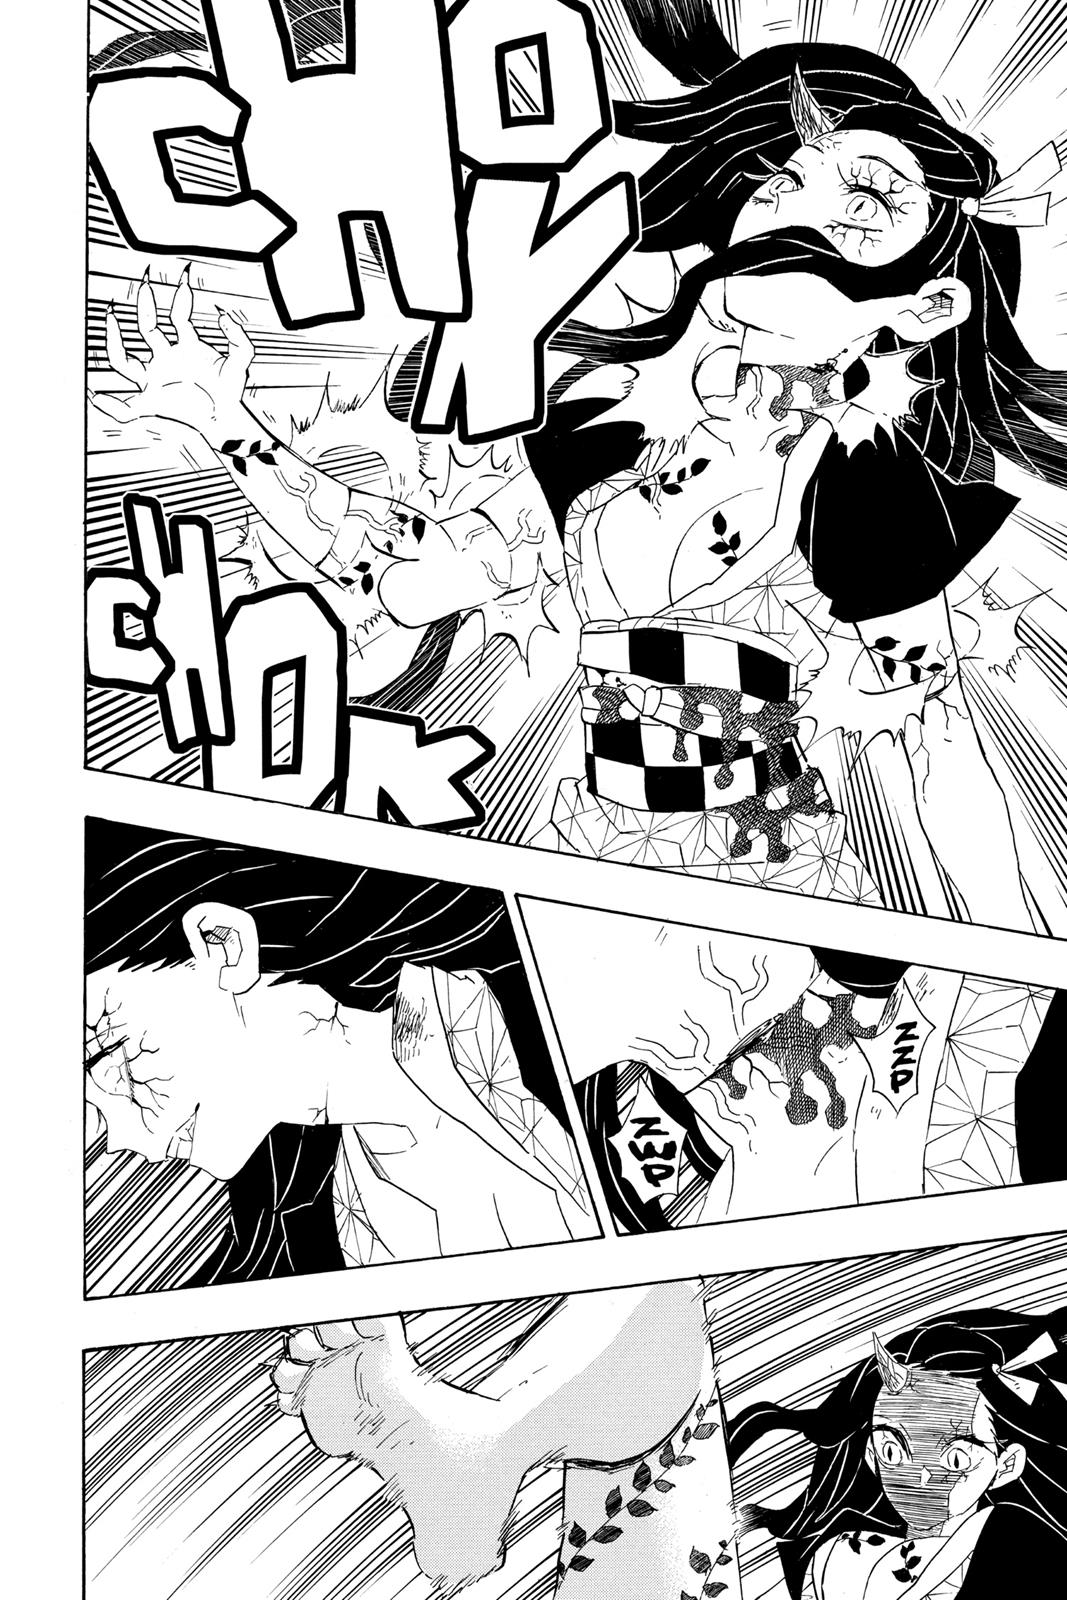 Demon Slayer Manga Manga Chapter - 84 - image 6